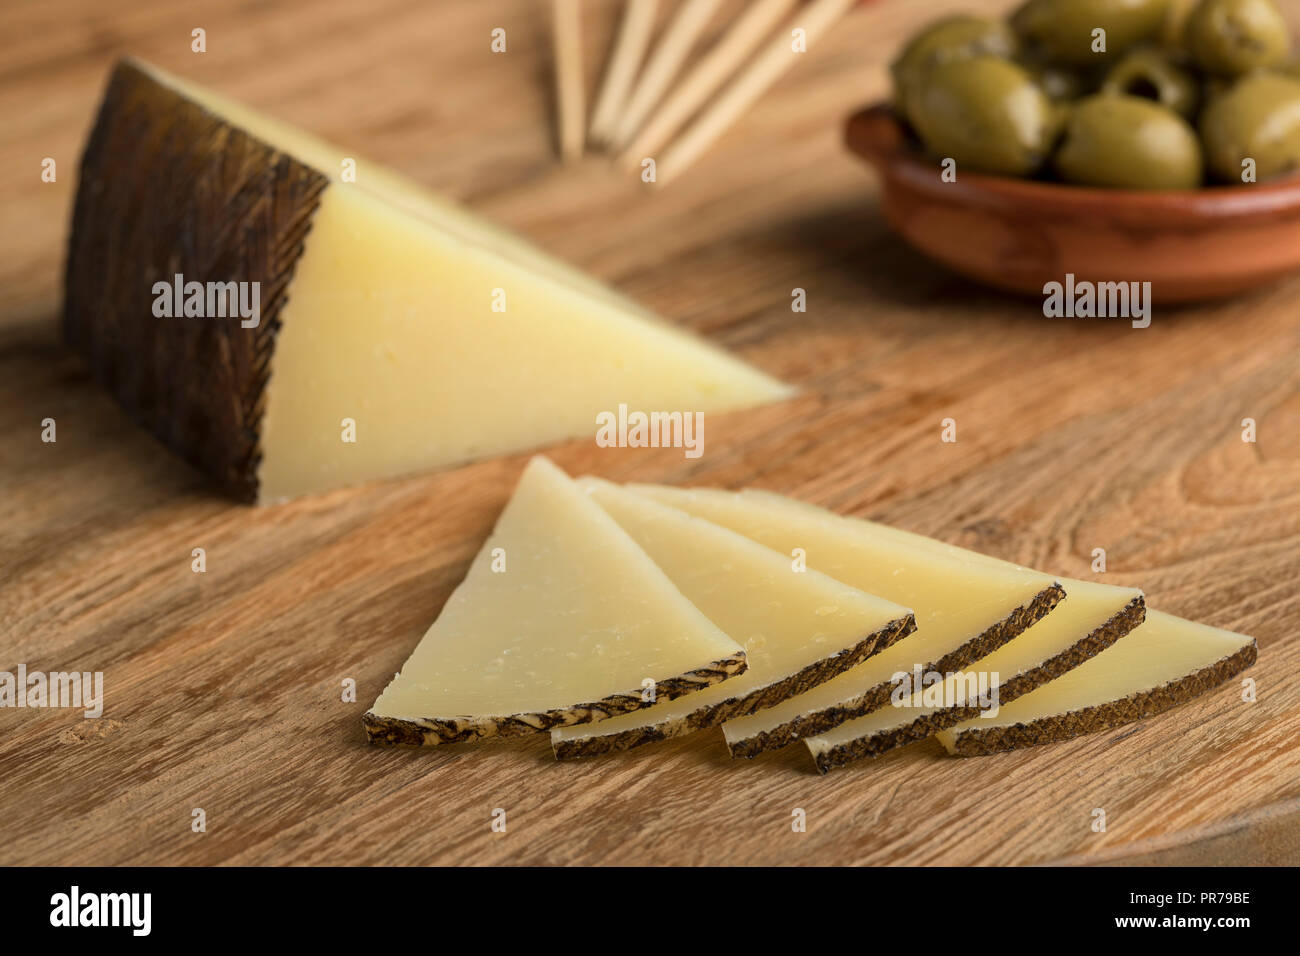 Rebanadas de queso Manchego tradicional española y aceitunas en el fondo Foto de stock